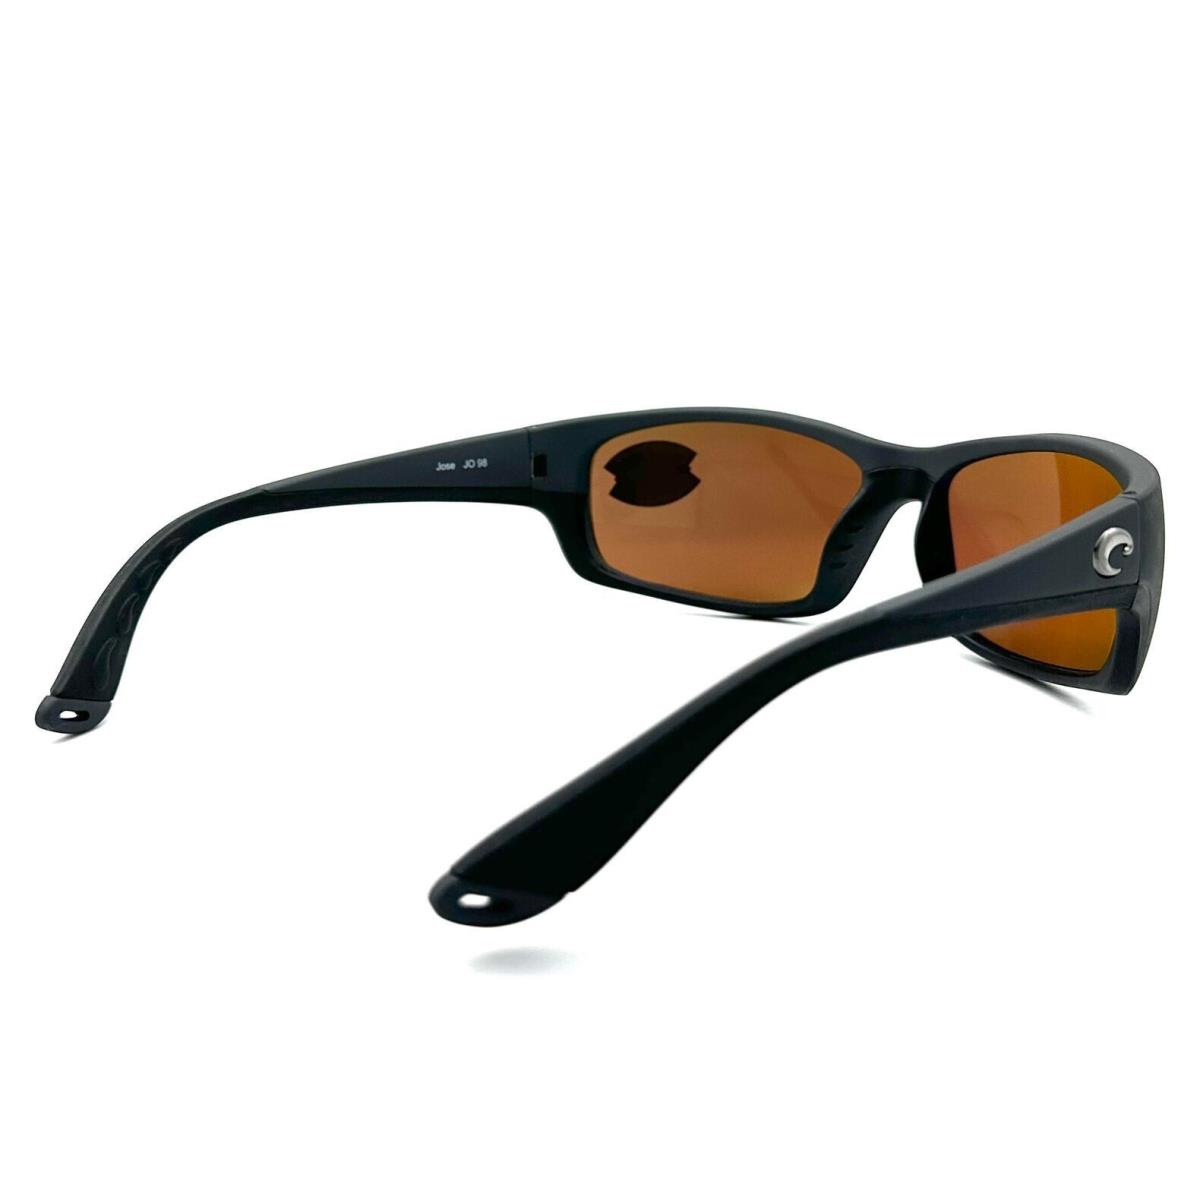 Costa Del Mar sunglasses Jose - Frame: Matte Gray, Lens: Green Mirror 580Plastic 2